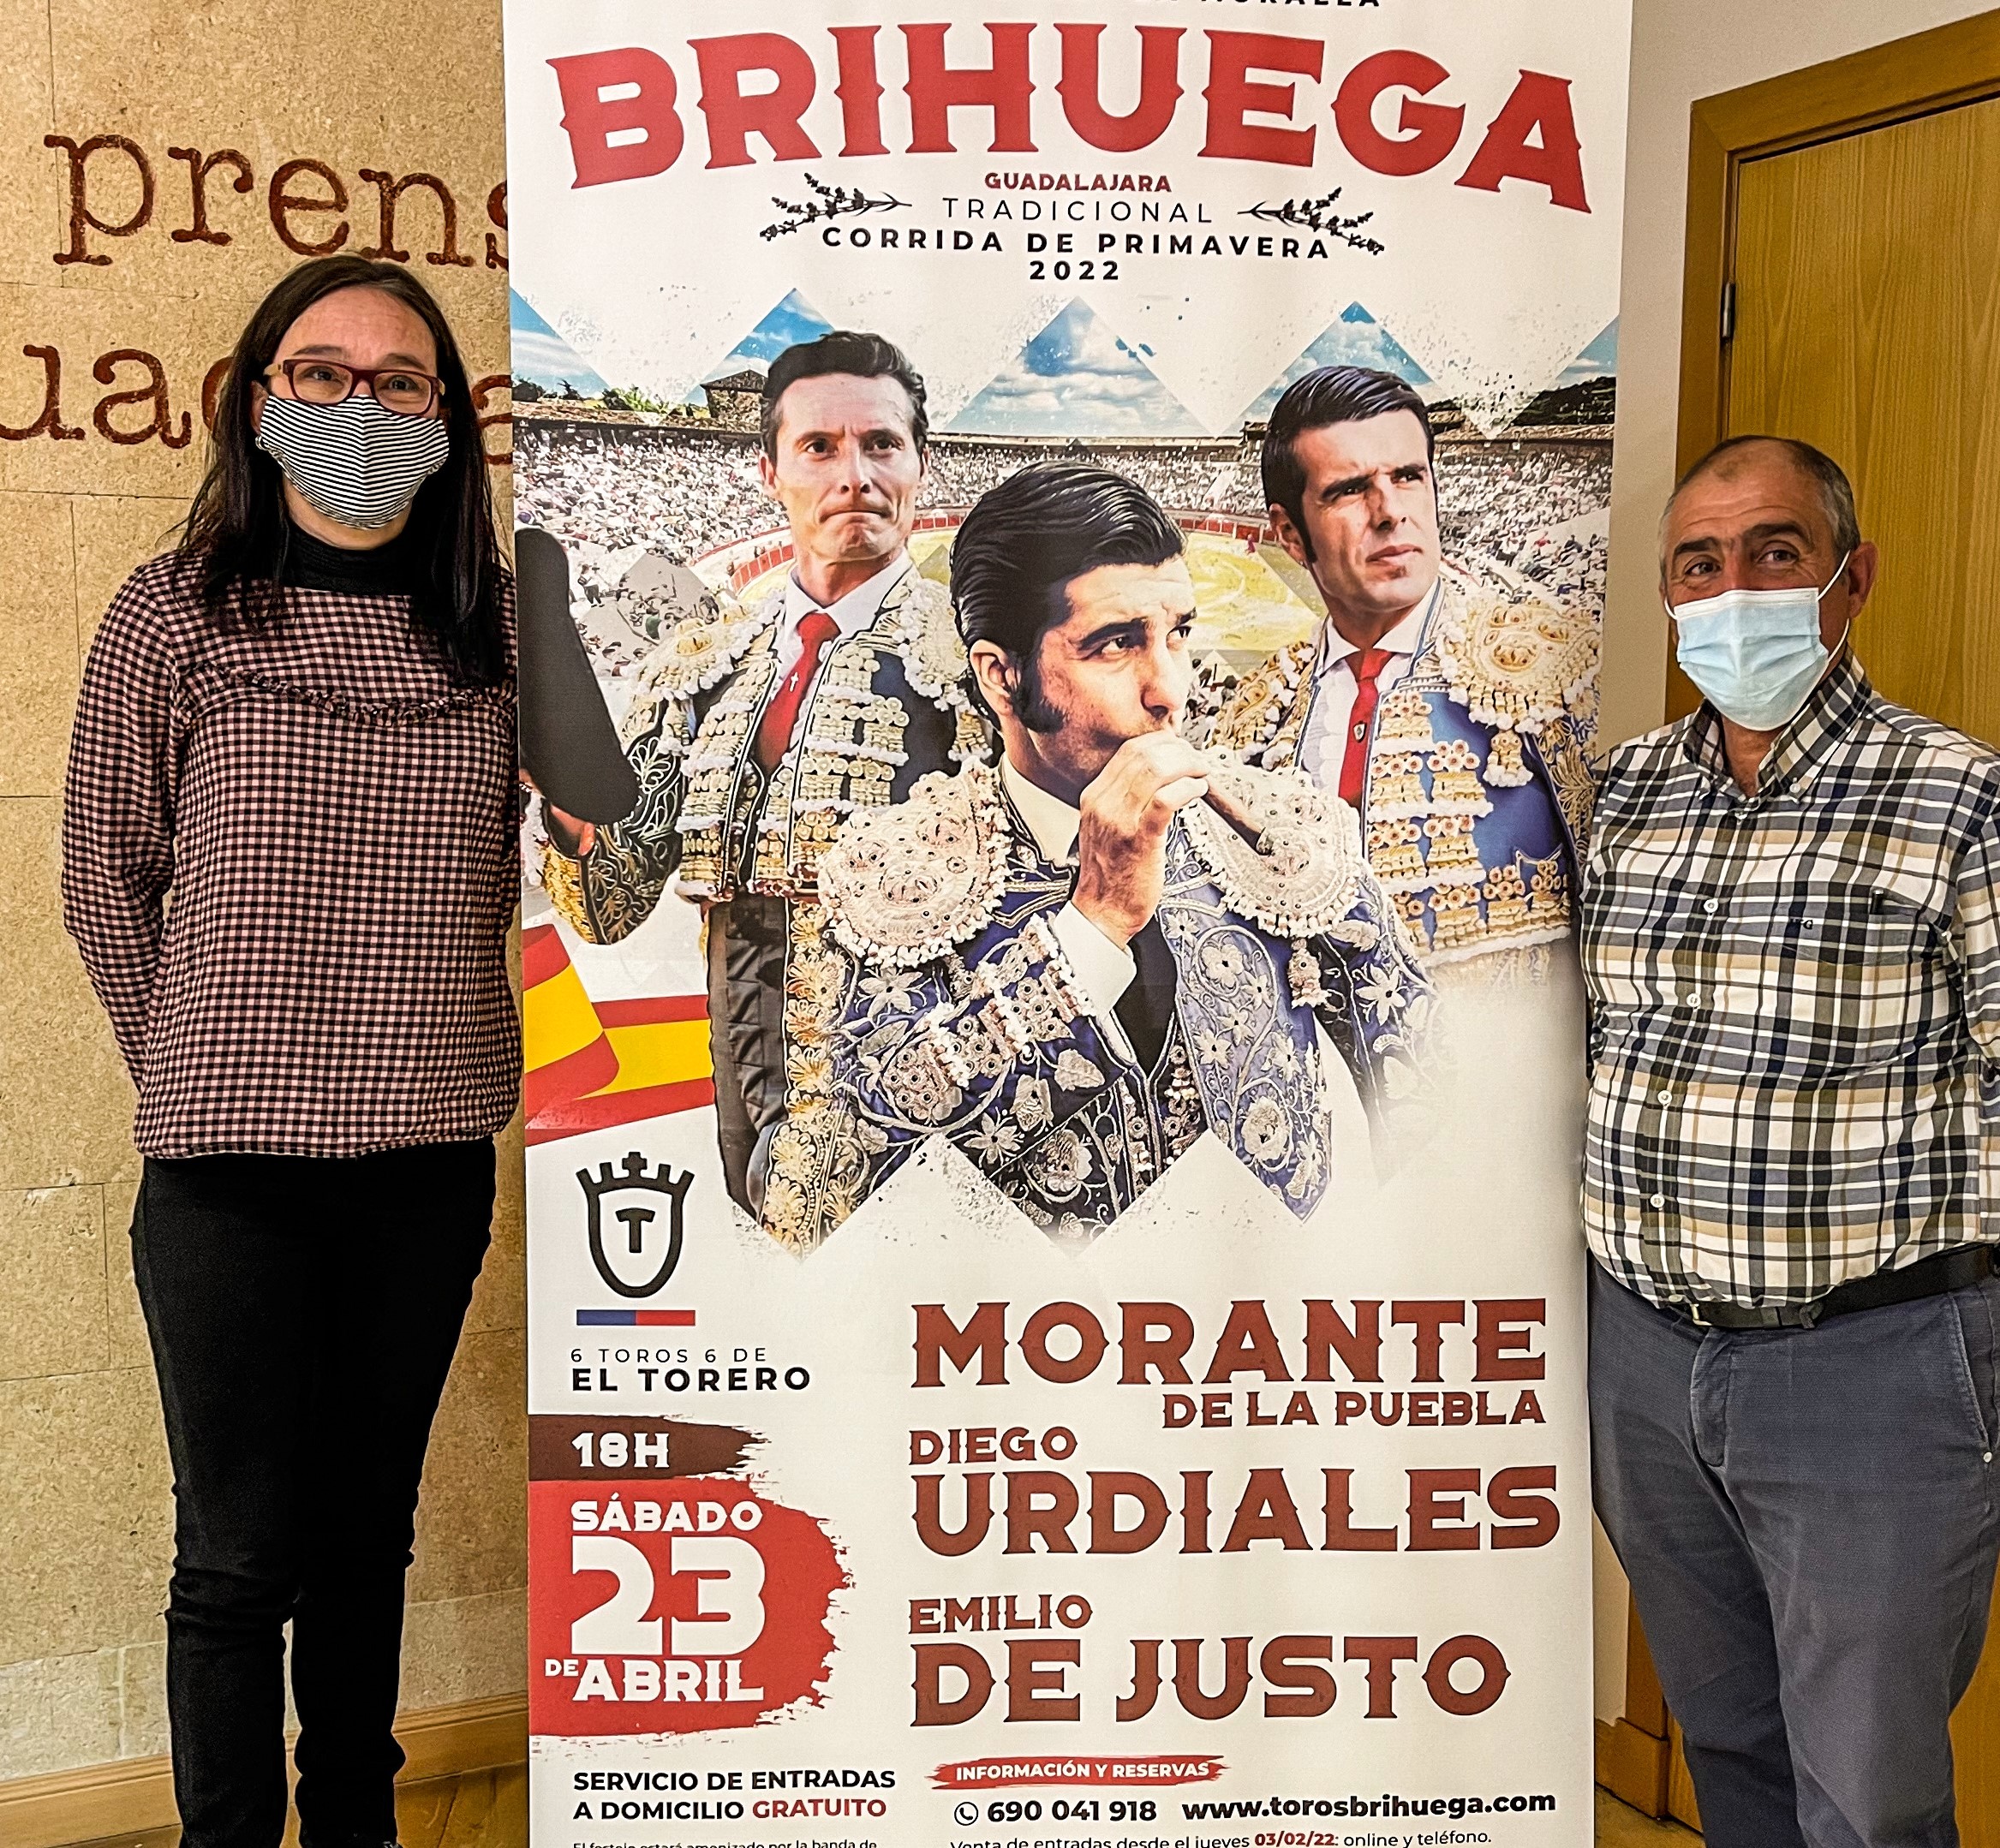 El cartel de la Corrida de Primavera de 2022 en Brihuega se ha presentado en el Centro de Prensa de Guadalajara.